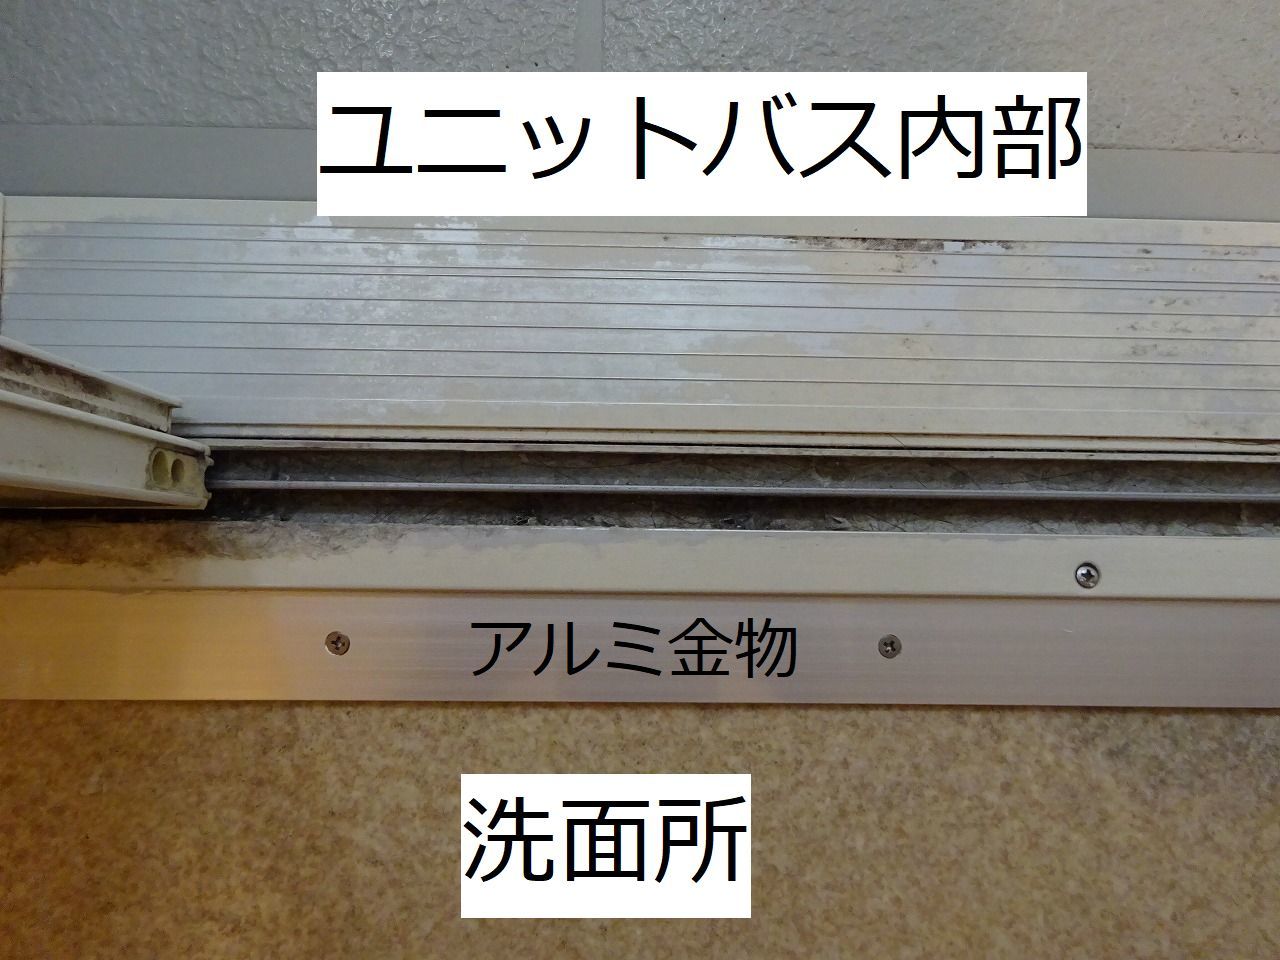 評判 ミヤコ MIYAKO MB153Sストール小便器手摺 38 寸法 トイレ配管部材 トイレ用設備